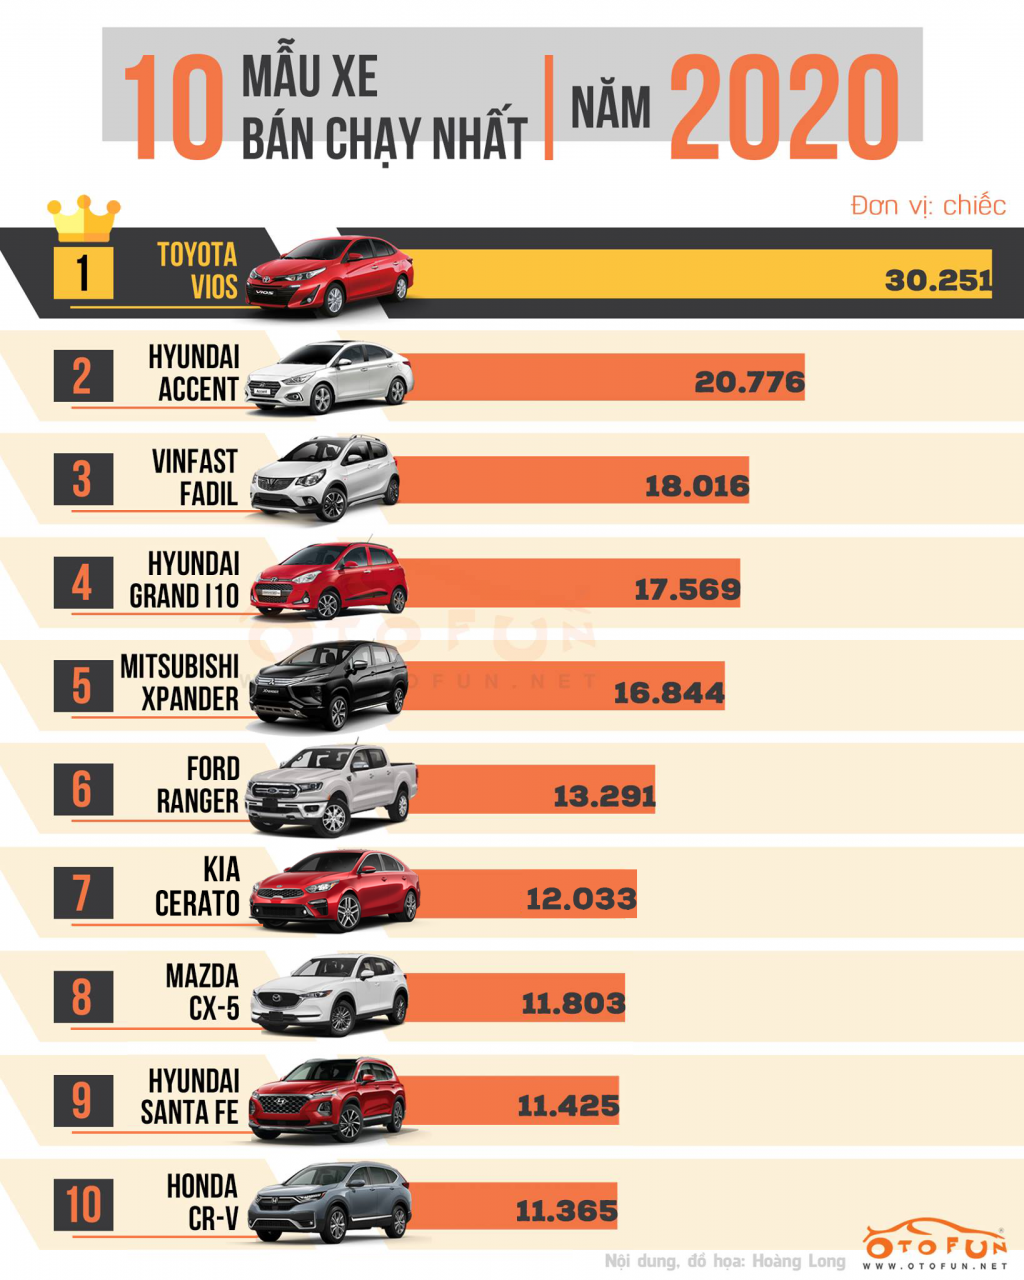 [Infographic] Top 10 xe bán chạy nhất năm 2020